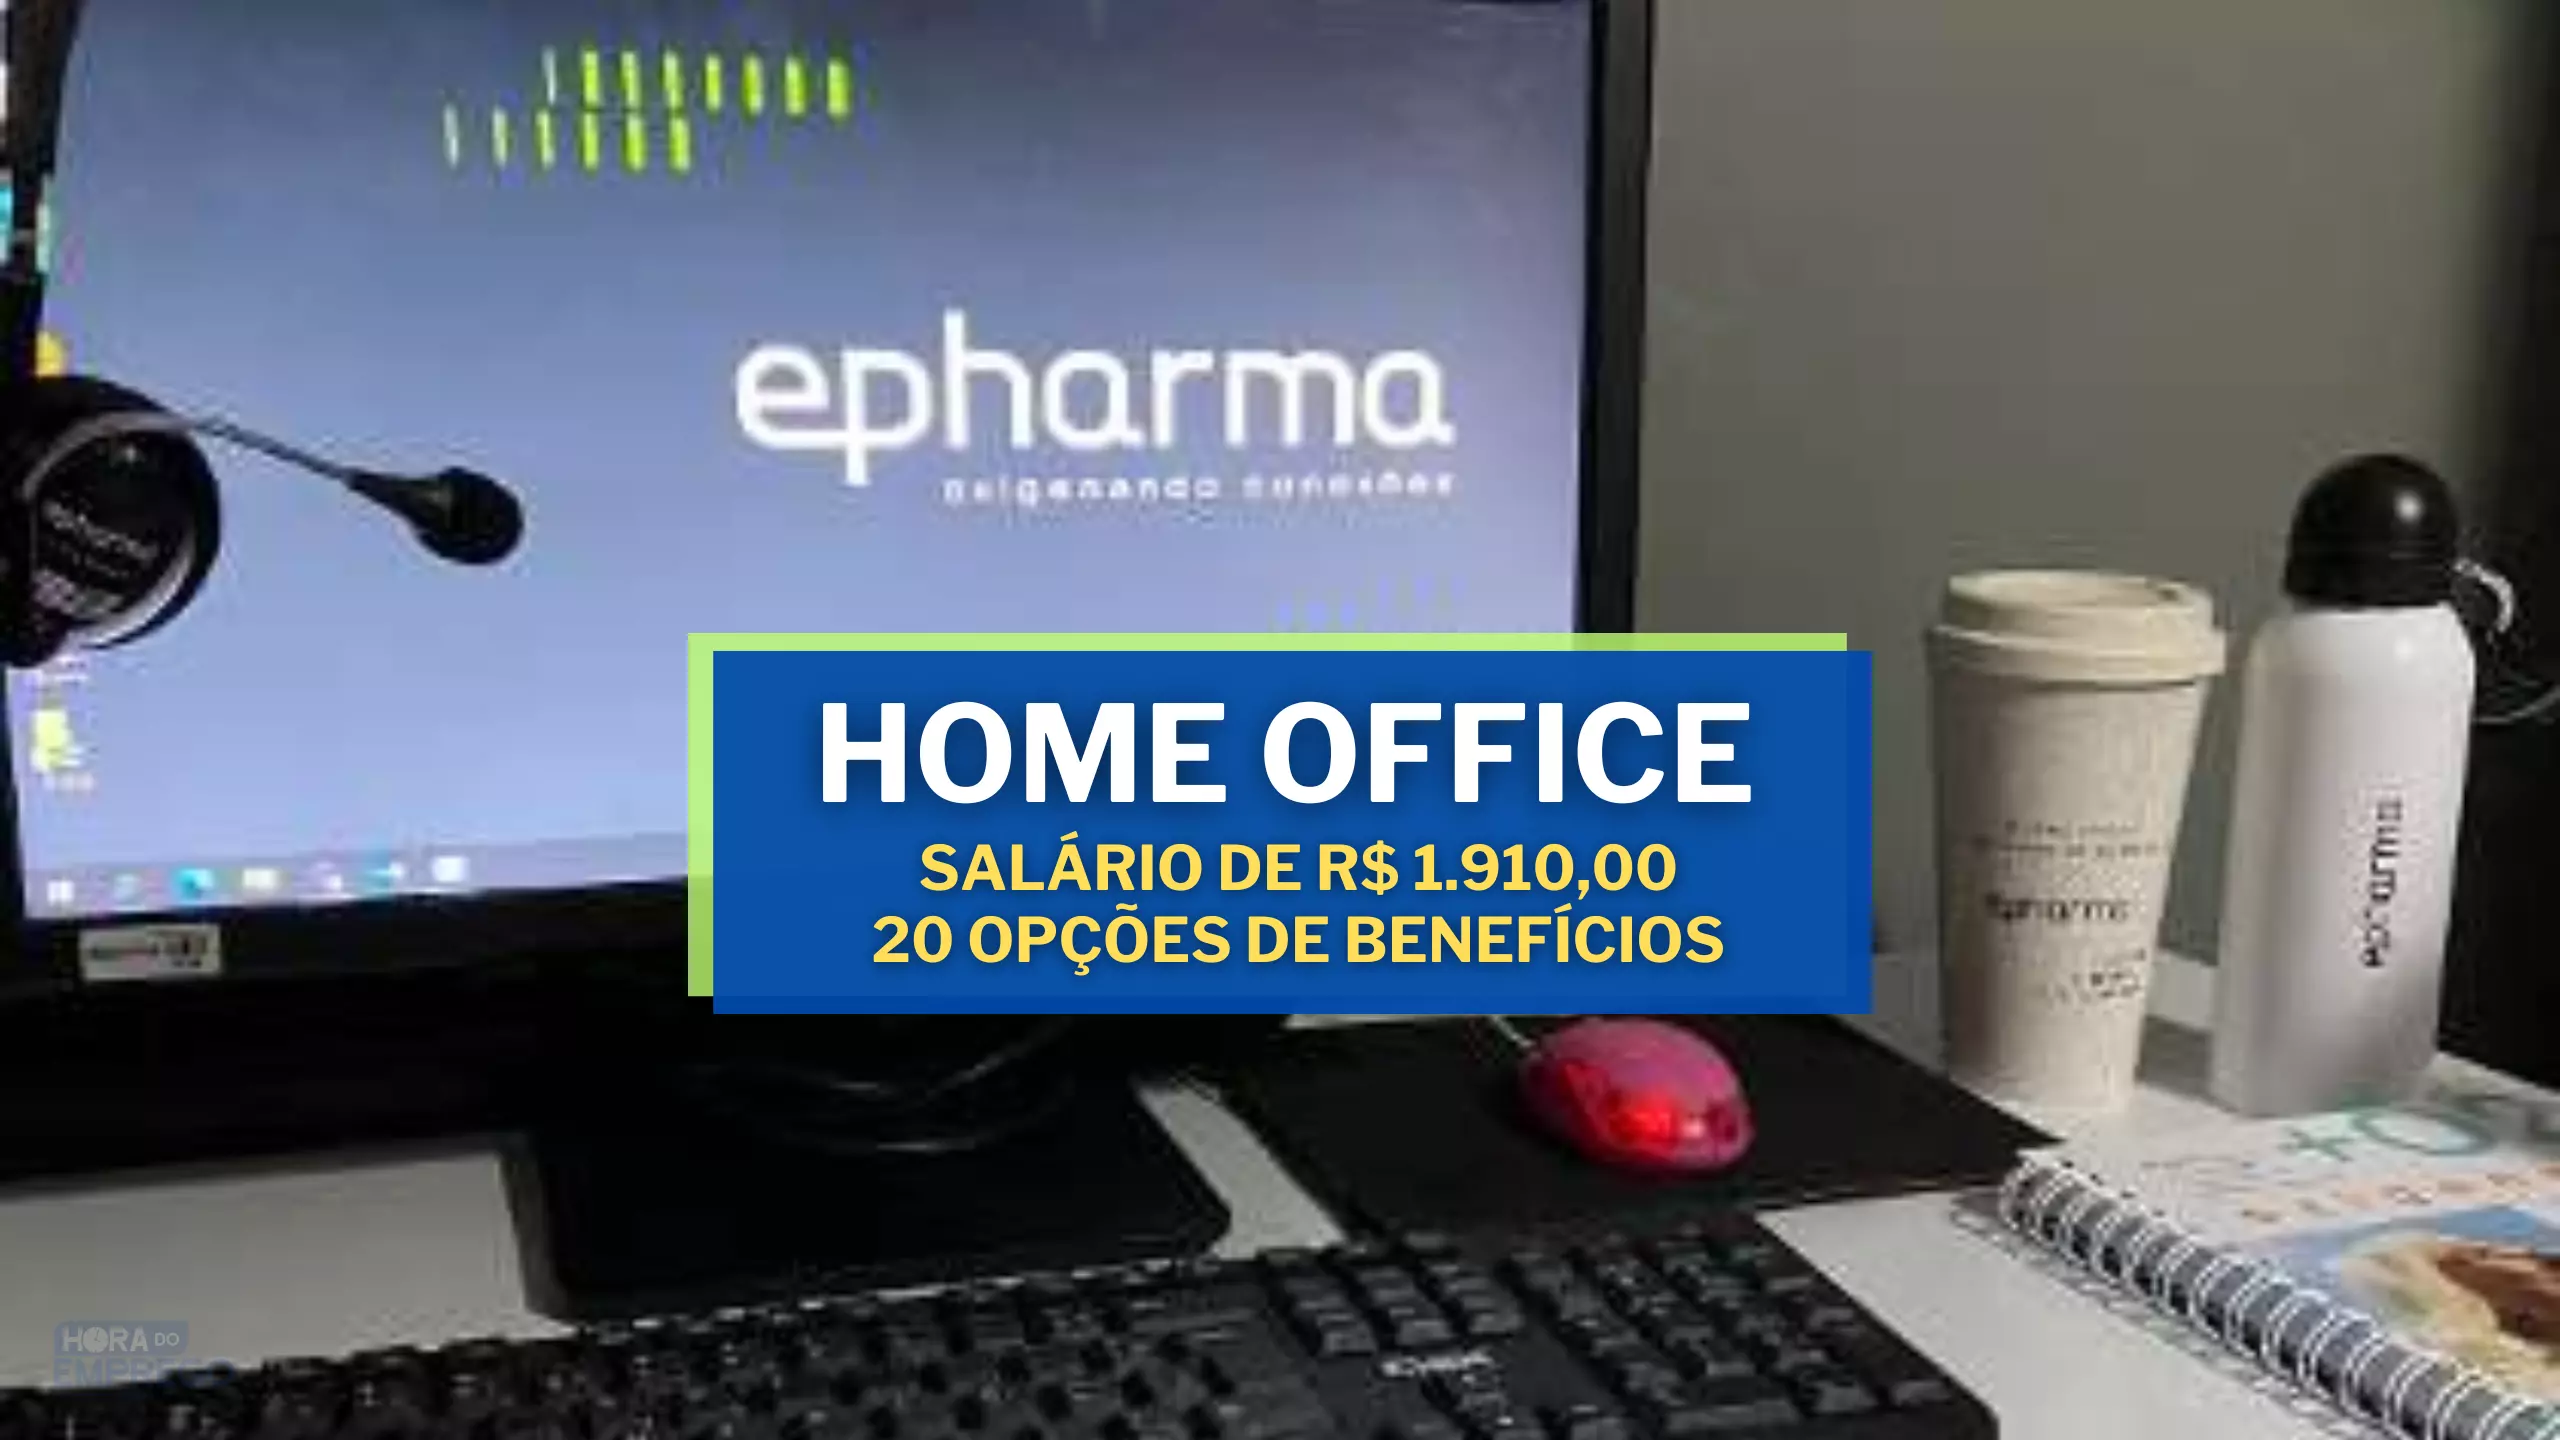 Epharmer abre vagas HOME OFFICE para Assistente Administrativa com salário de R$1.910,00 e 20 opções de benefícios